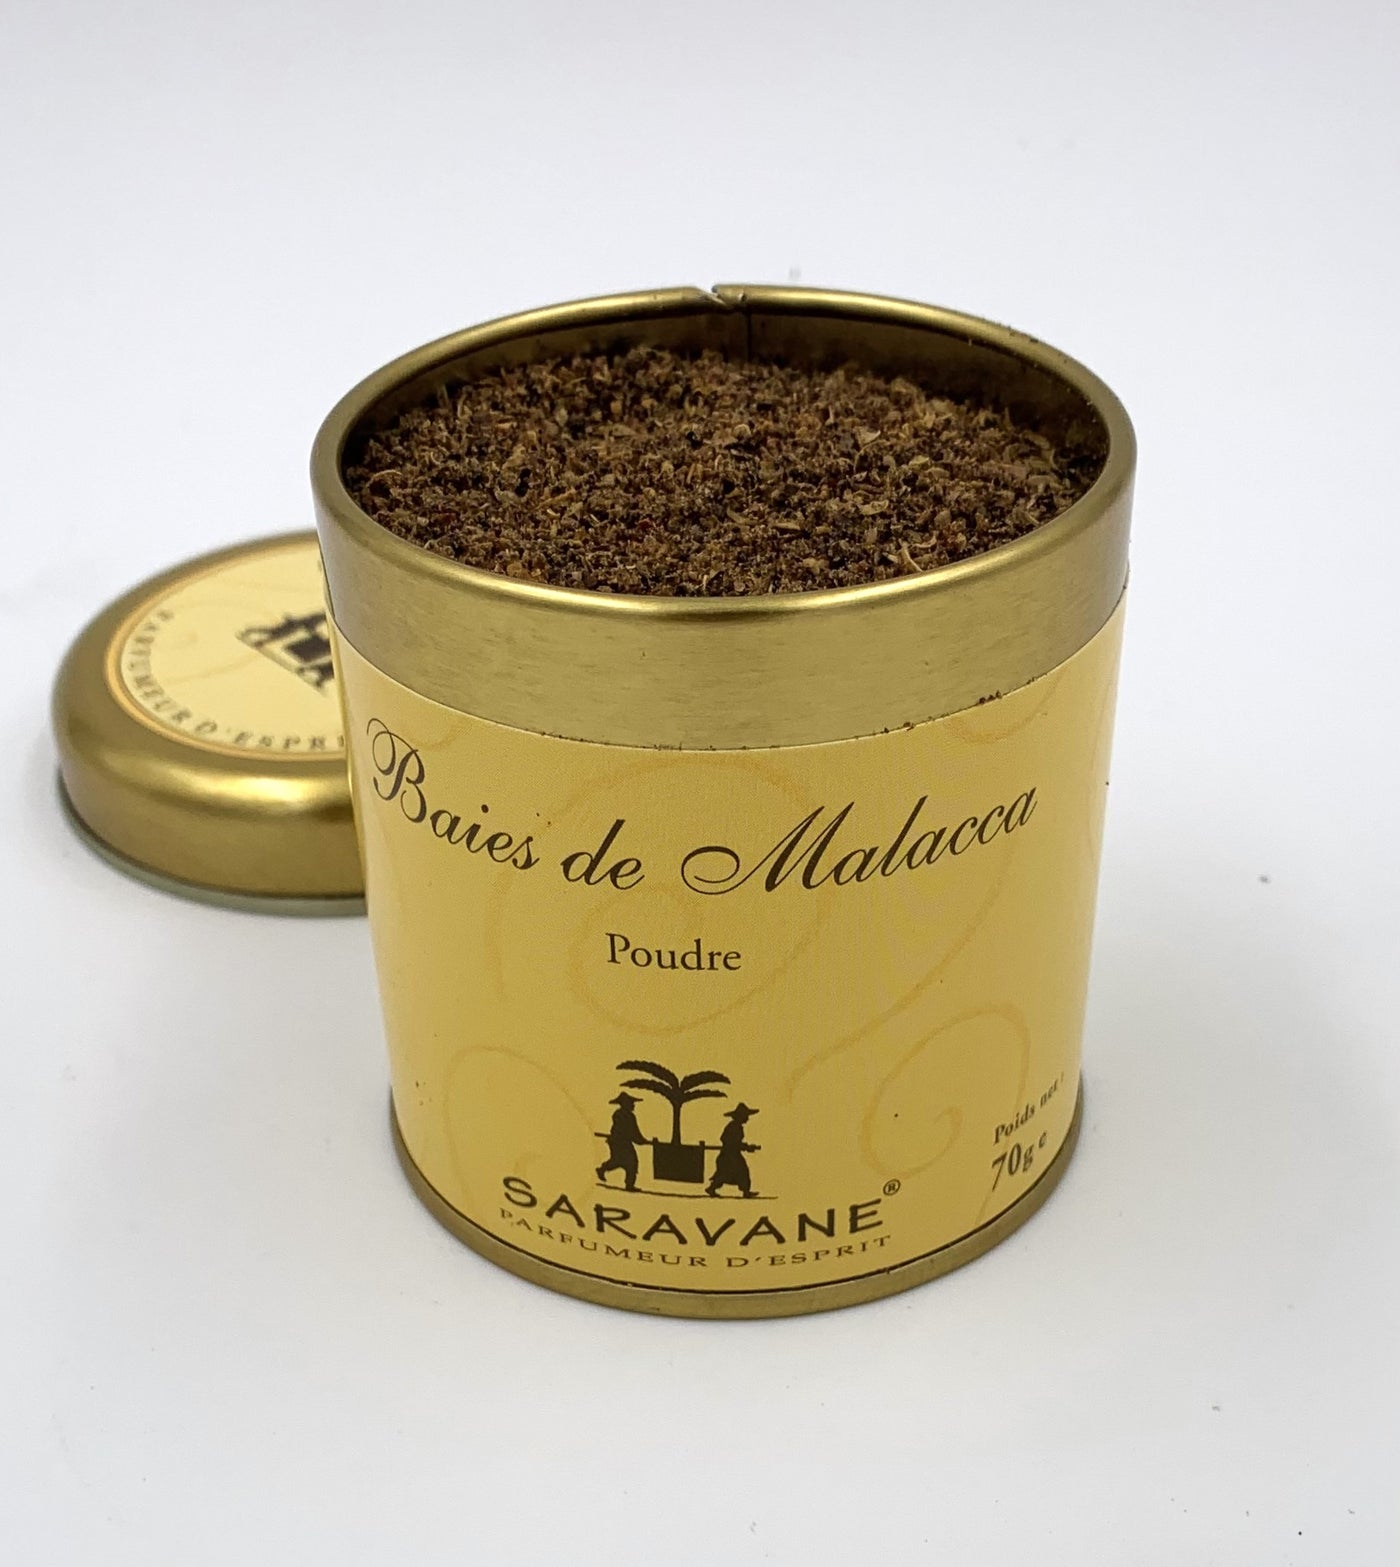 8 épices pour réveiller votre chocolat - Saravane - Parfumeur d'esprit -  épices du monde